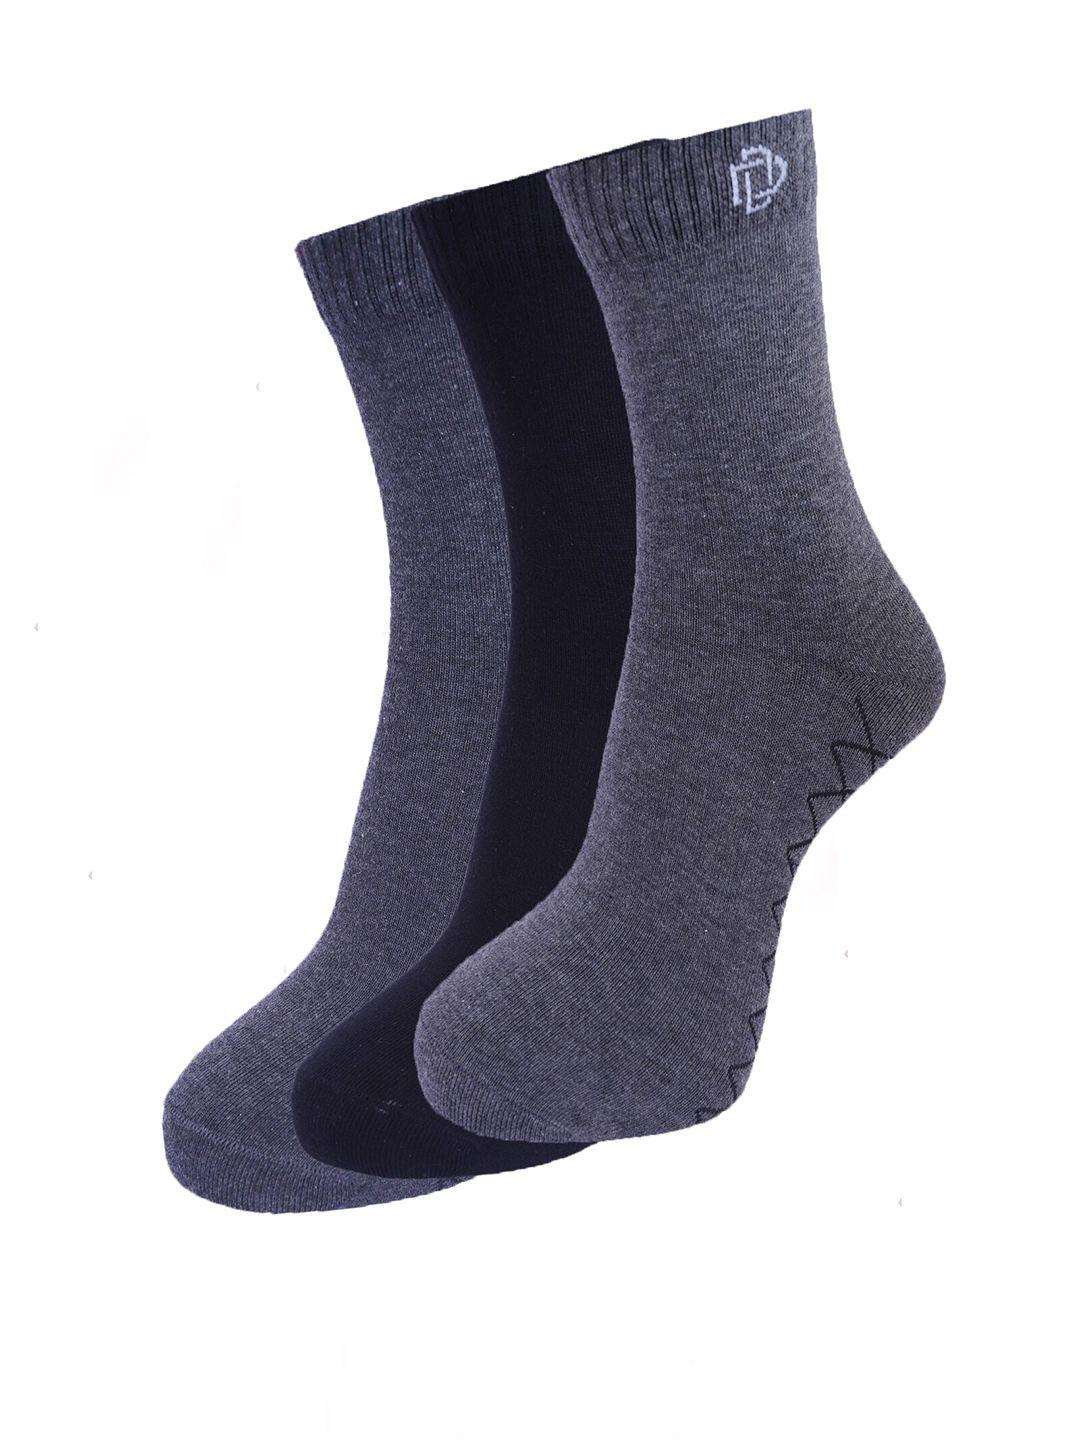 dollar socks men pack of 3 assorted cotton ankle-length socks